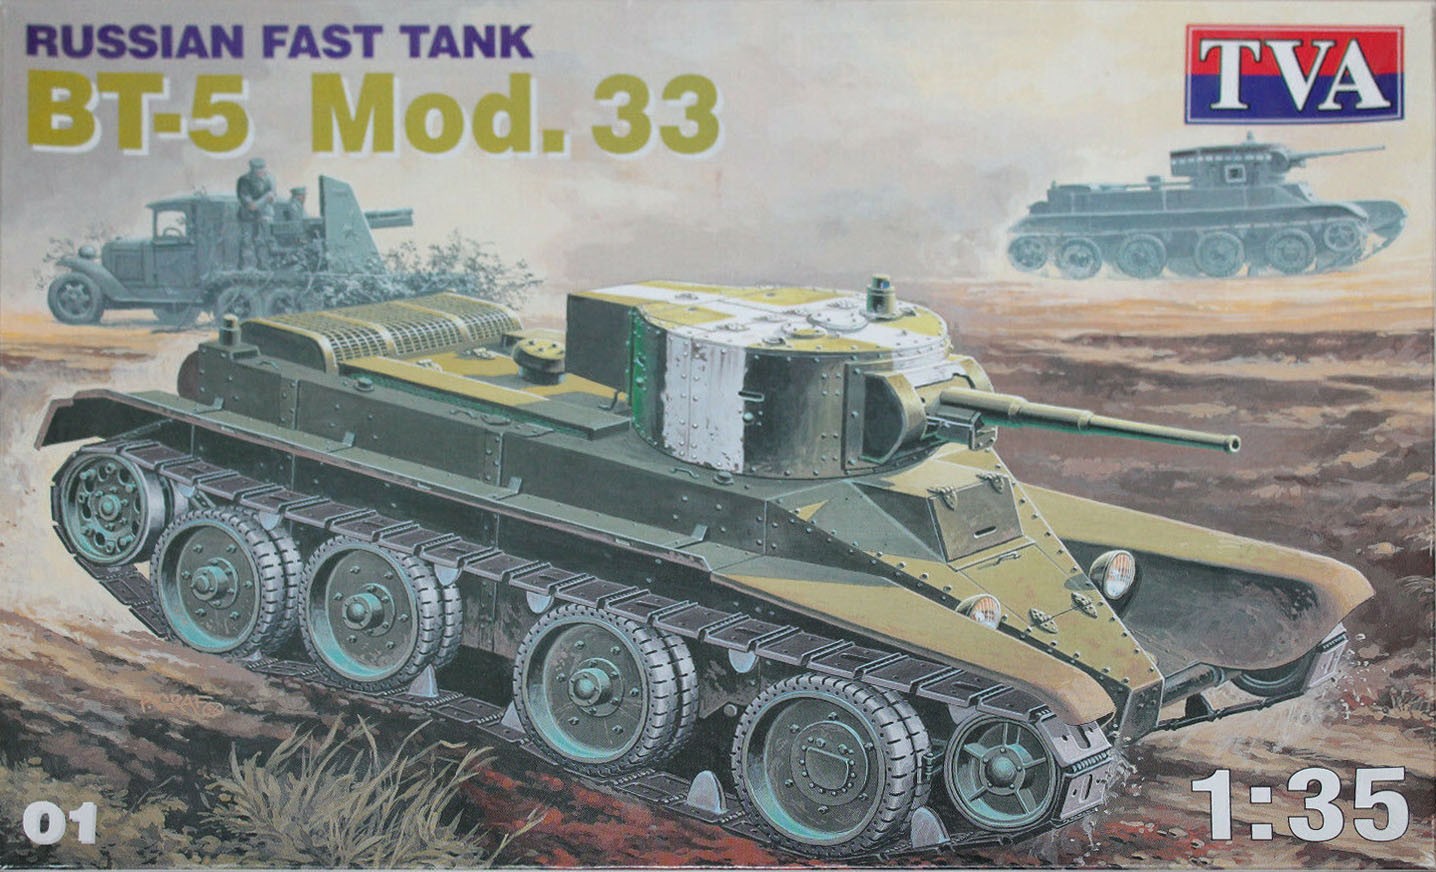 01 Russian Fast Tank BT-5 Mod.33 Image